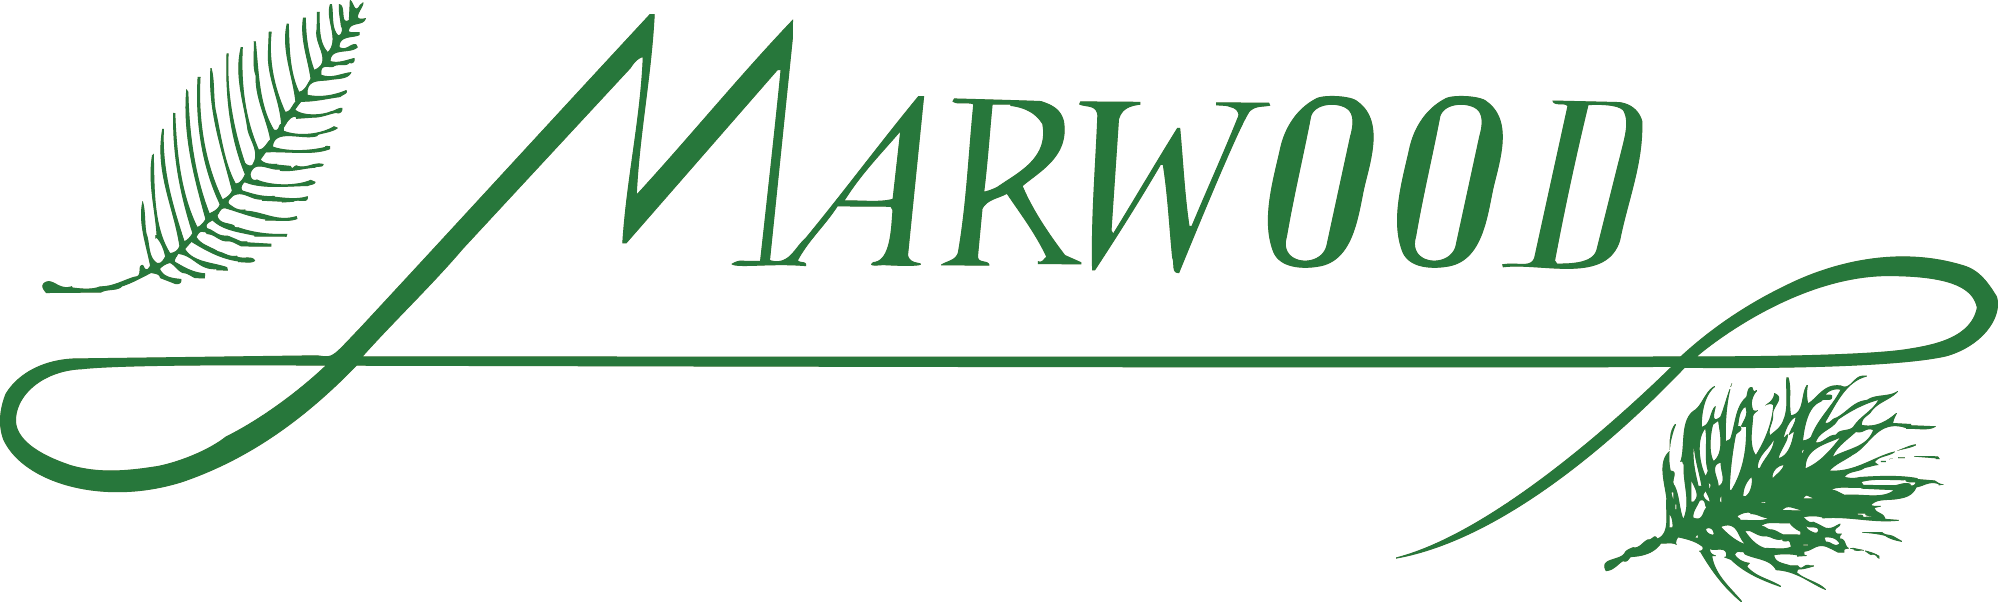 Marwood-Logo_GRN_CMYK